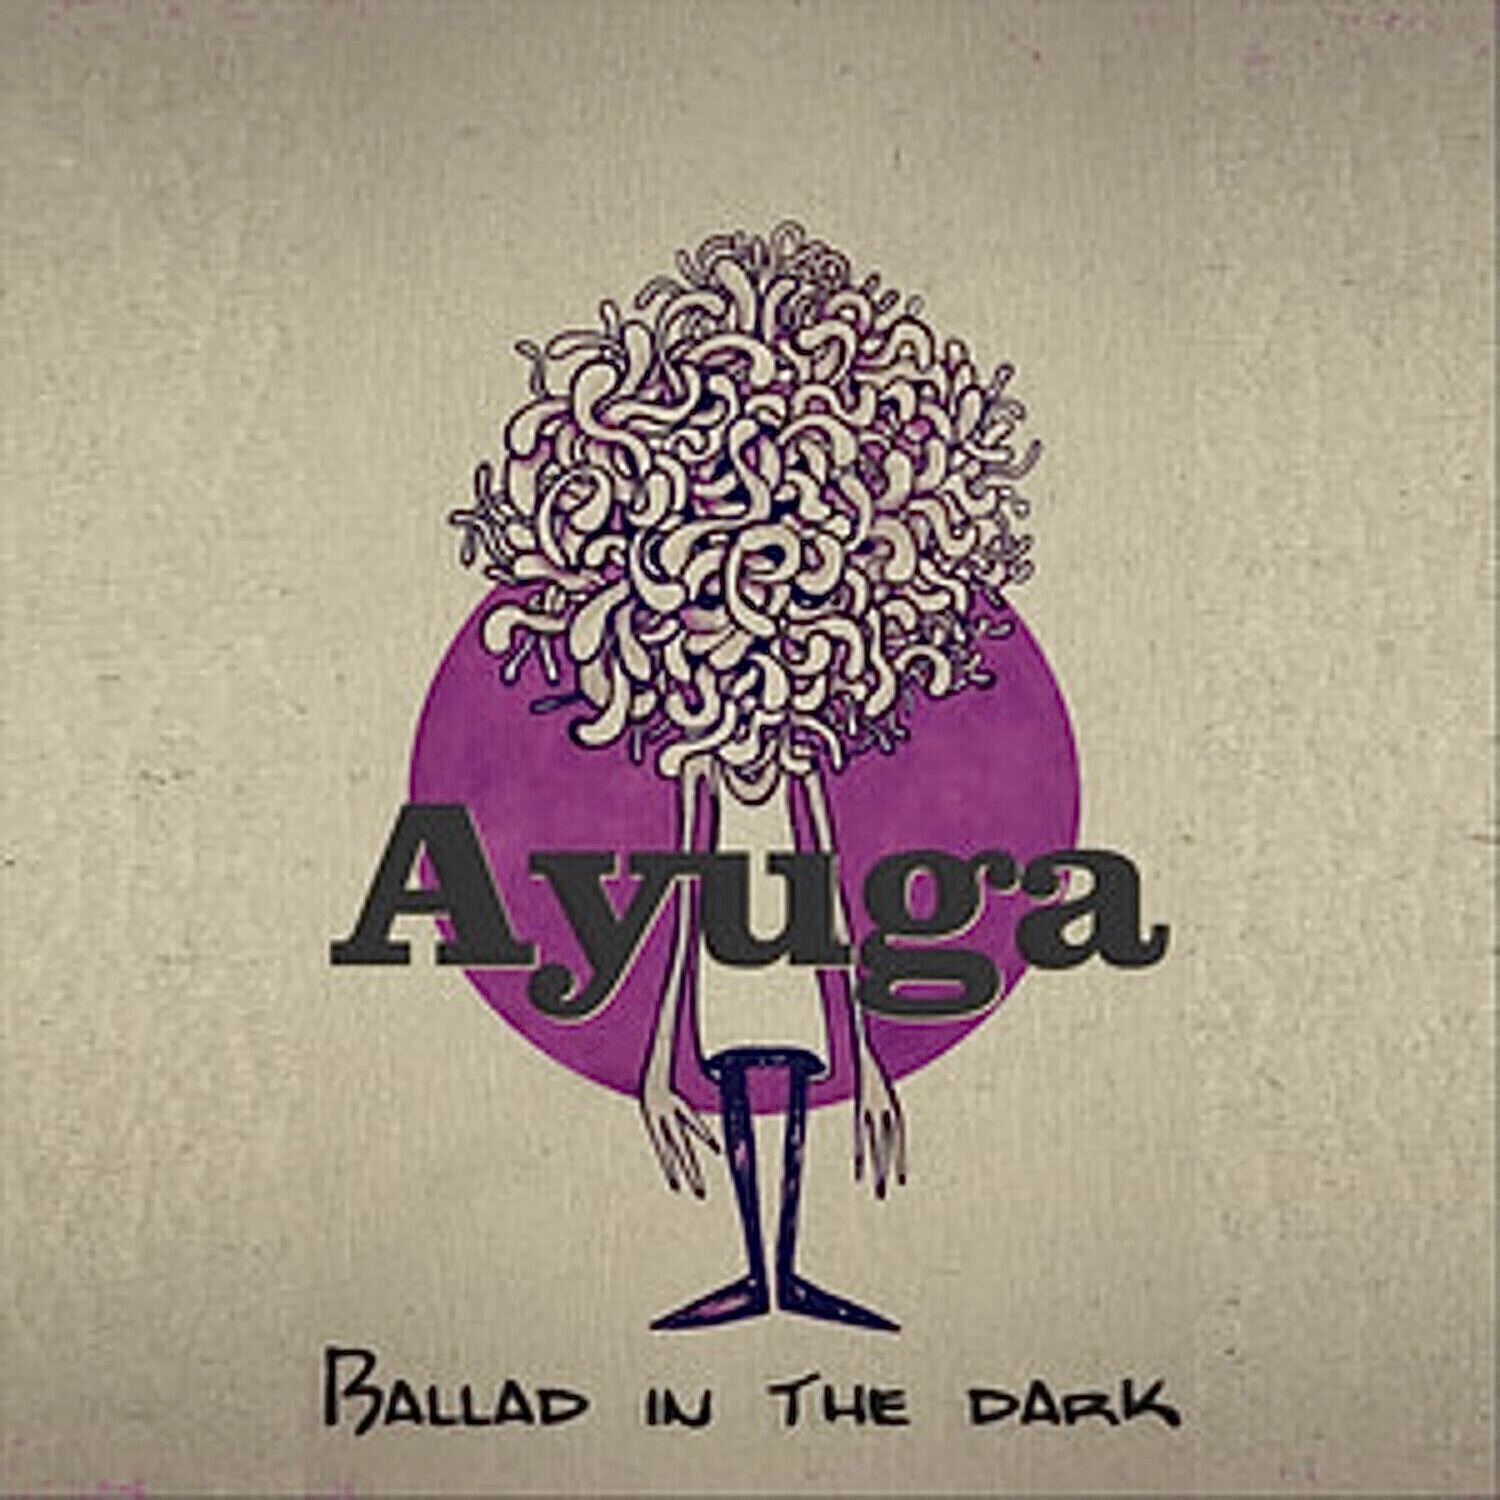 David Milzow (Tenorsax) and Ayuga (E-Bass) in "Ballad in the dark"